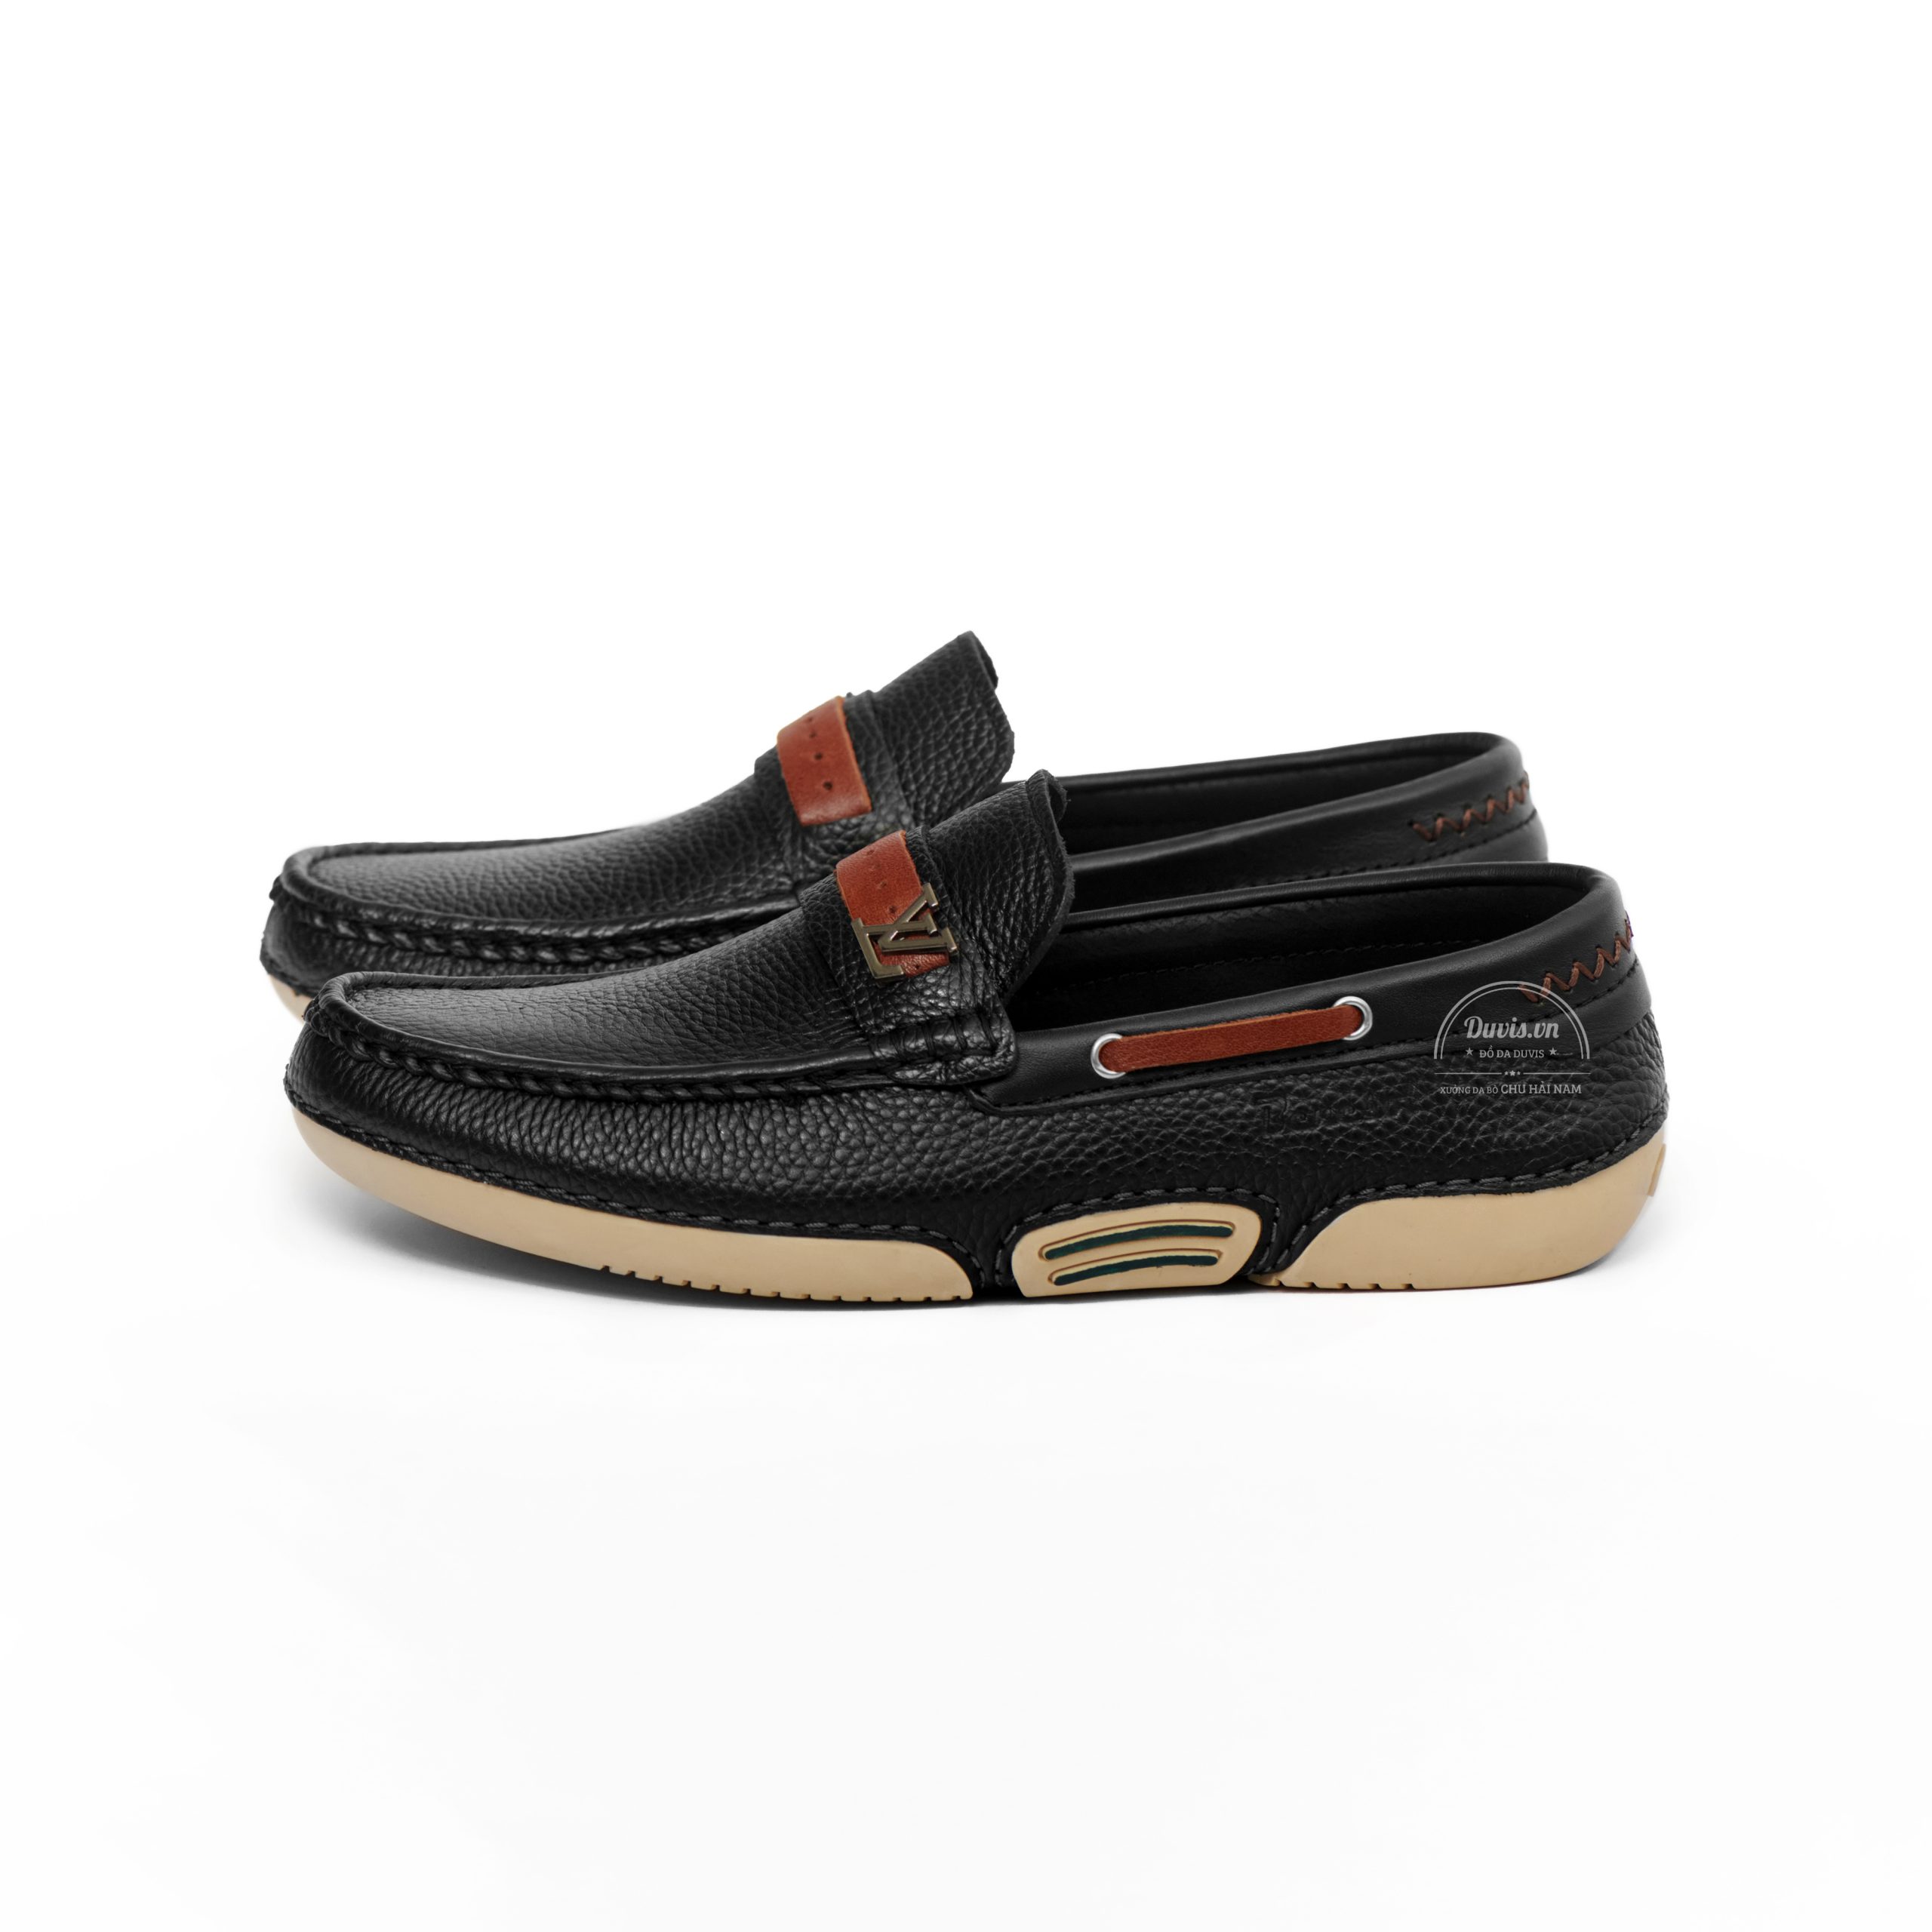 Giày Lười Da Bò LD99: Form giày ôm chân, thiết kế trẻ trung hiện đại